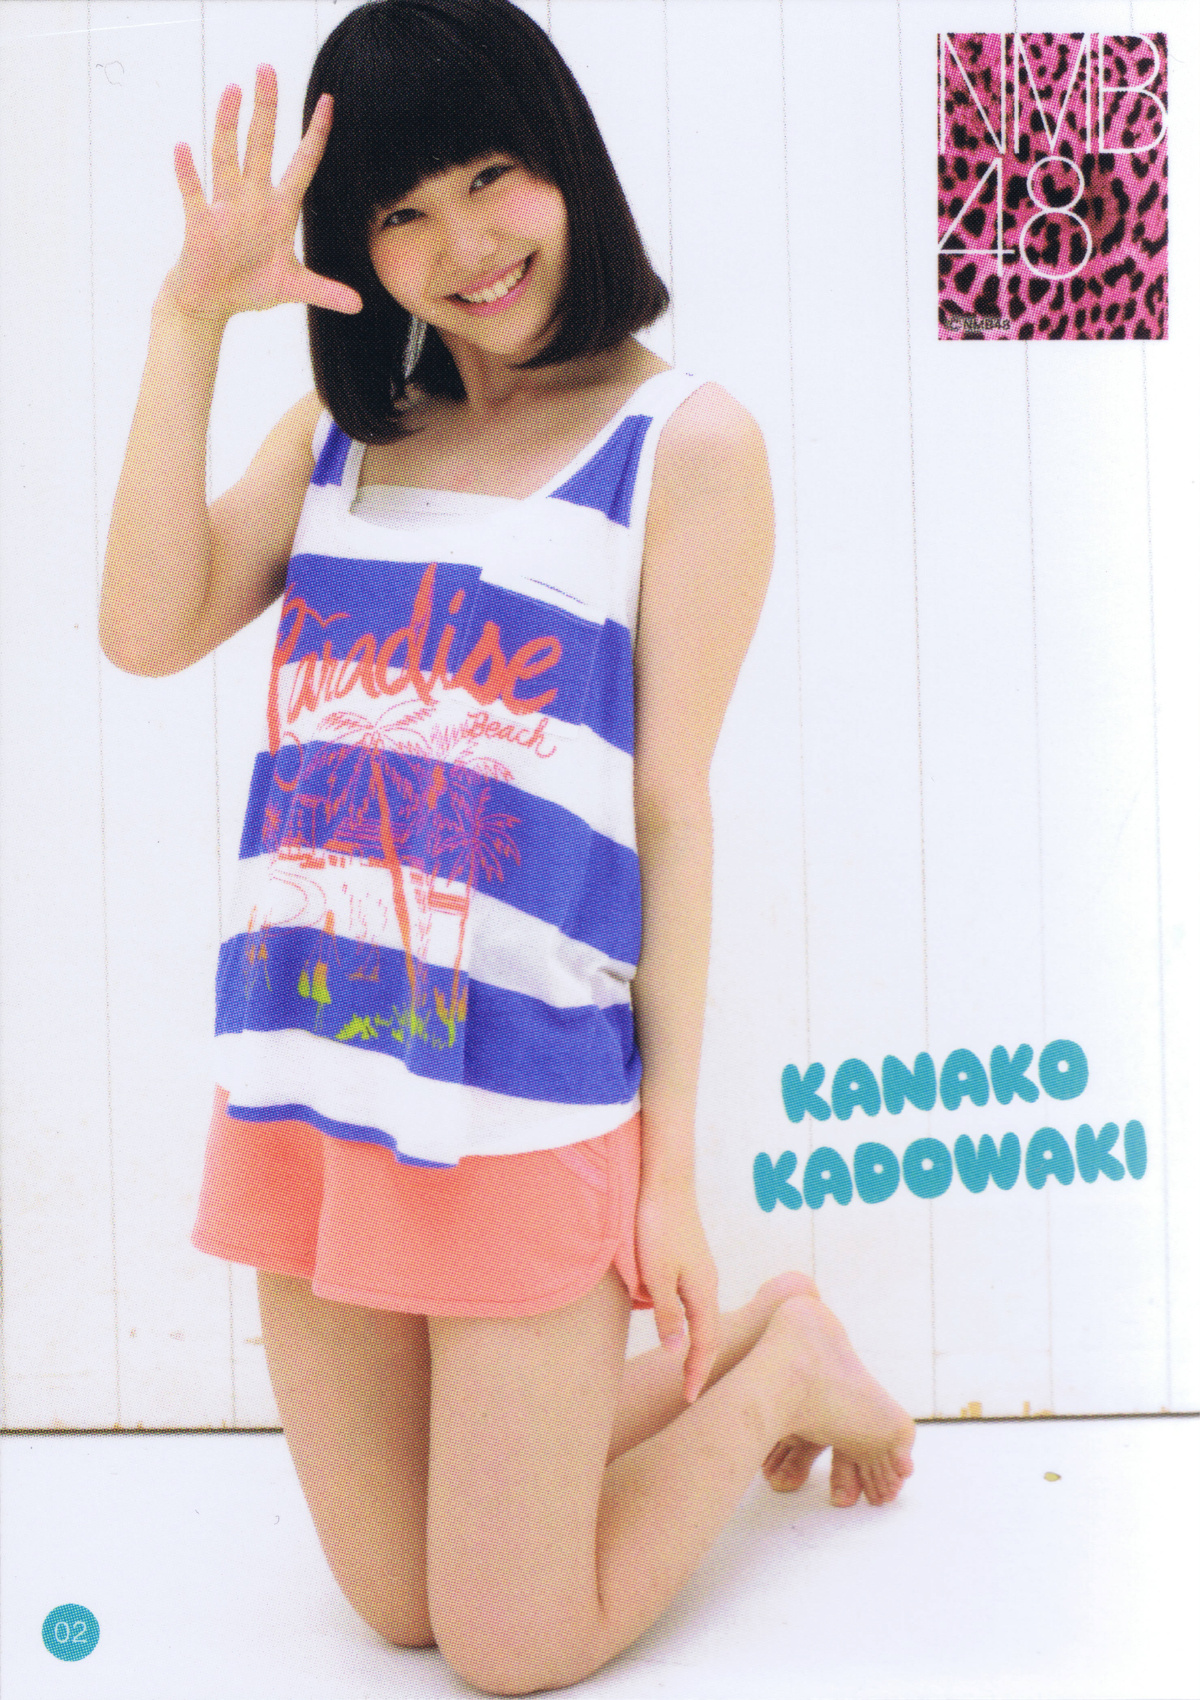 Accessory Trading Card 02 A Kadowaki Kanako